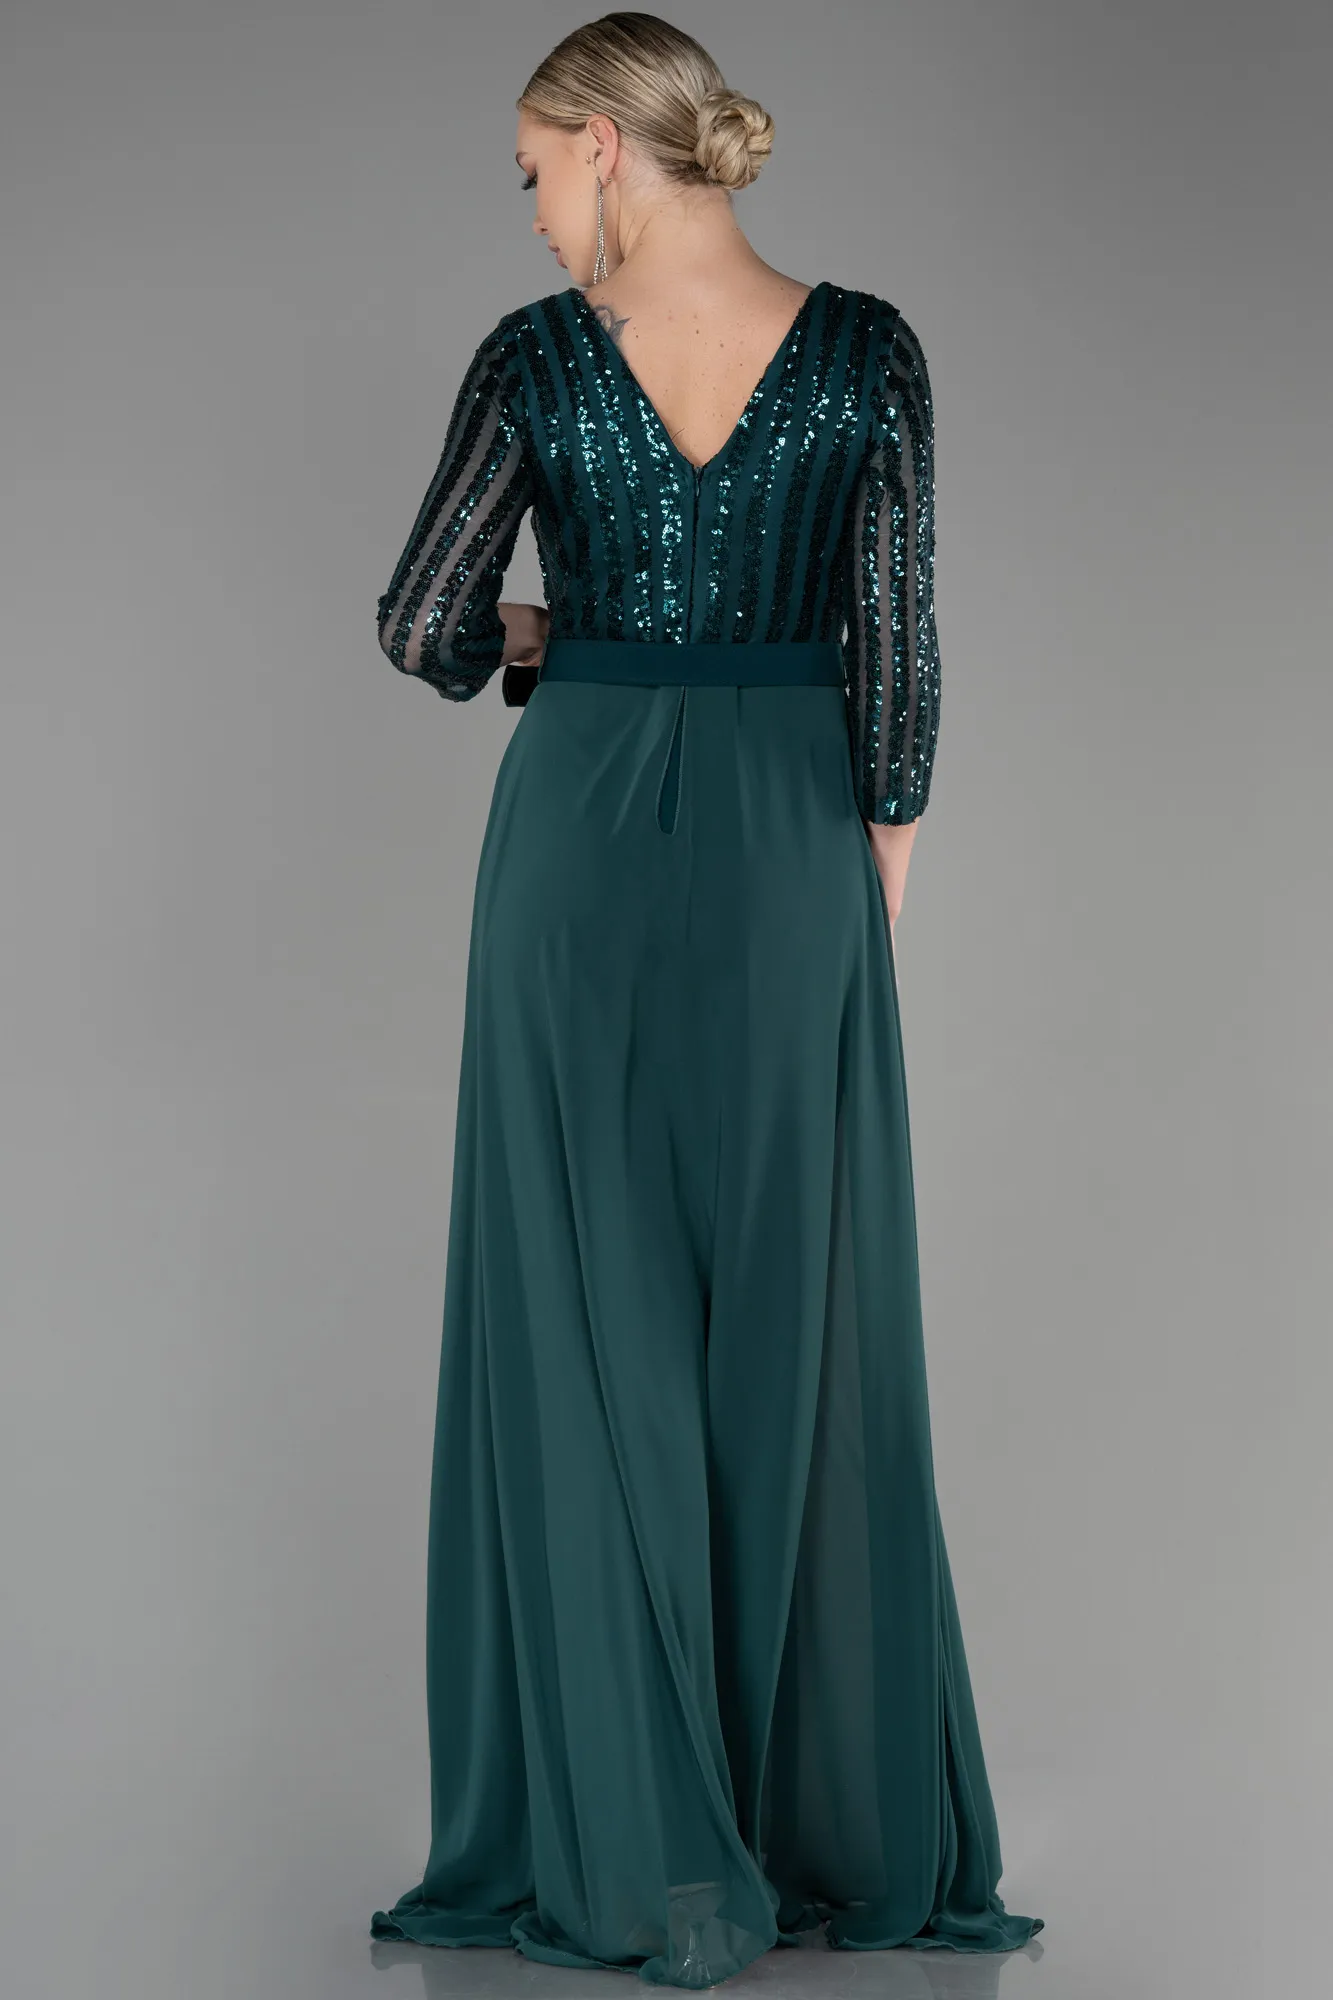 Emerald Green-Long Evening Dress ABT052